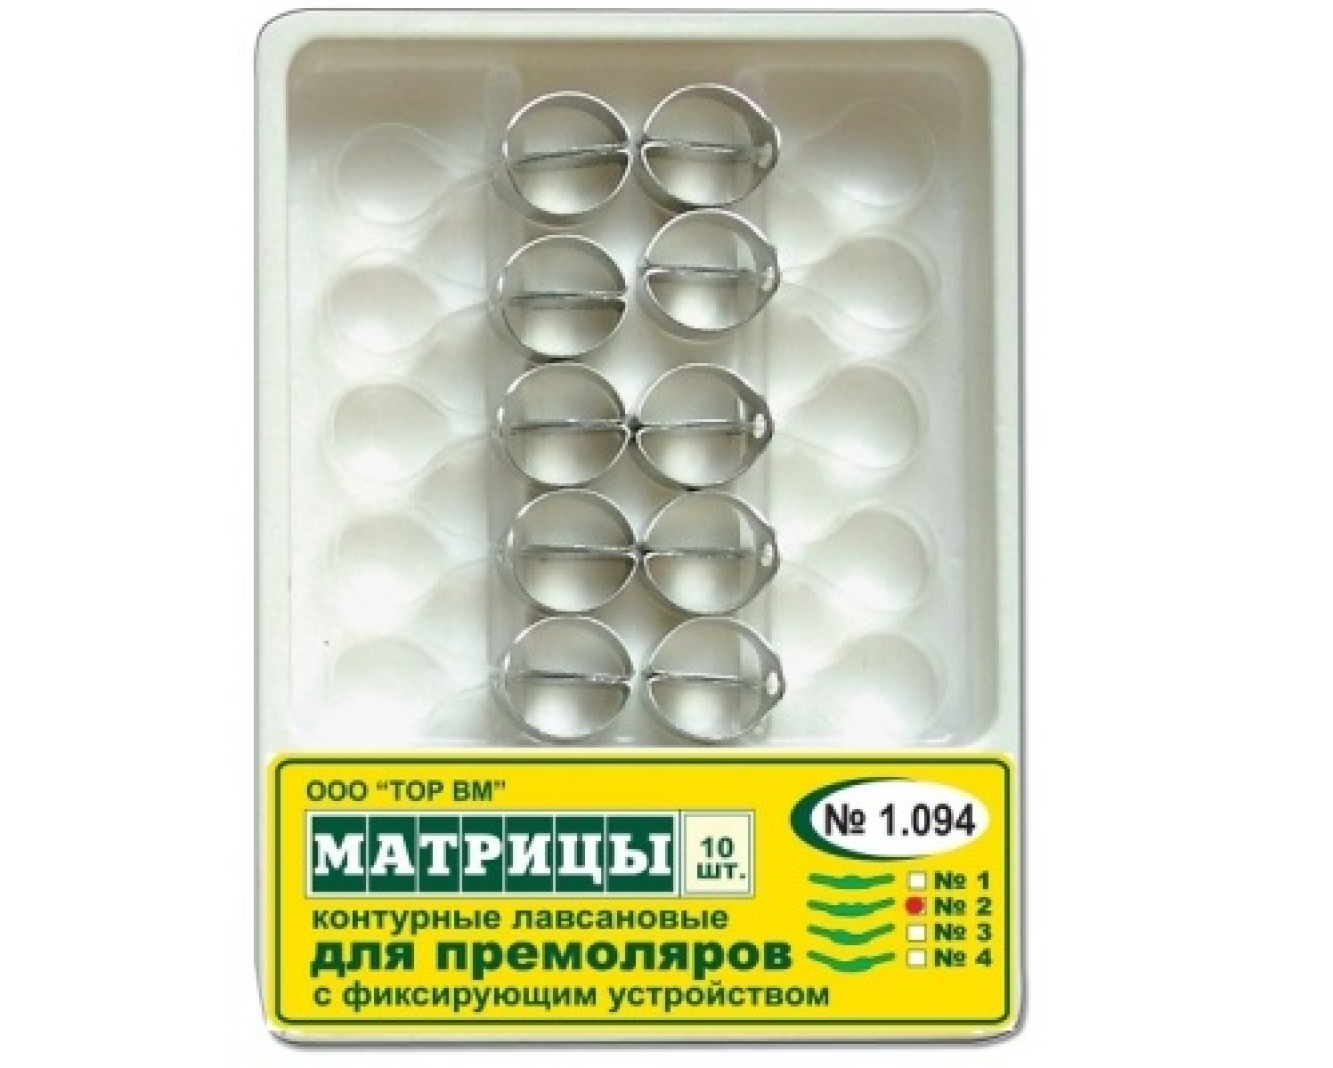 1.094(1) Матрицы контурные, лавсановые, с фиксирующим устройством, для премоляров, (форма 1), ТОР ВМ (Россия)